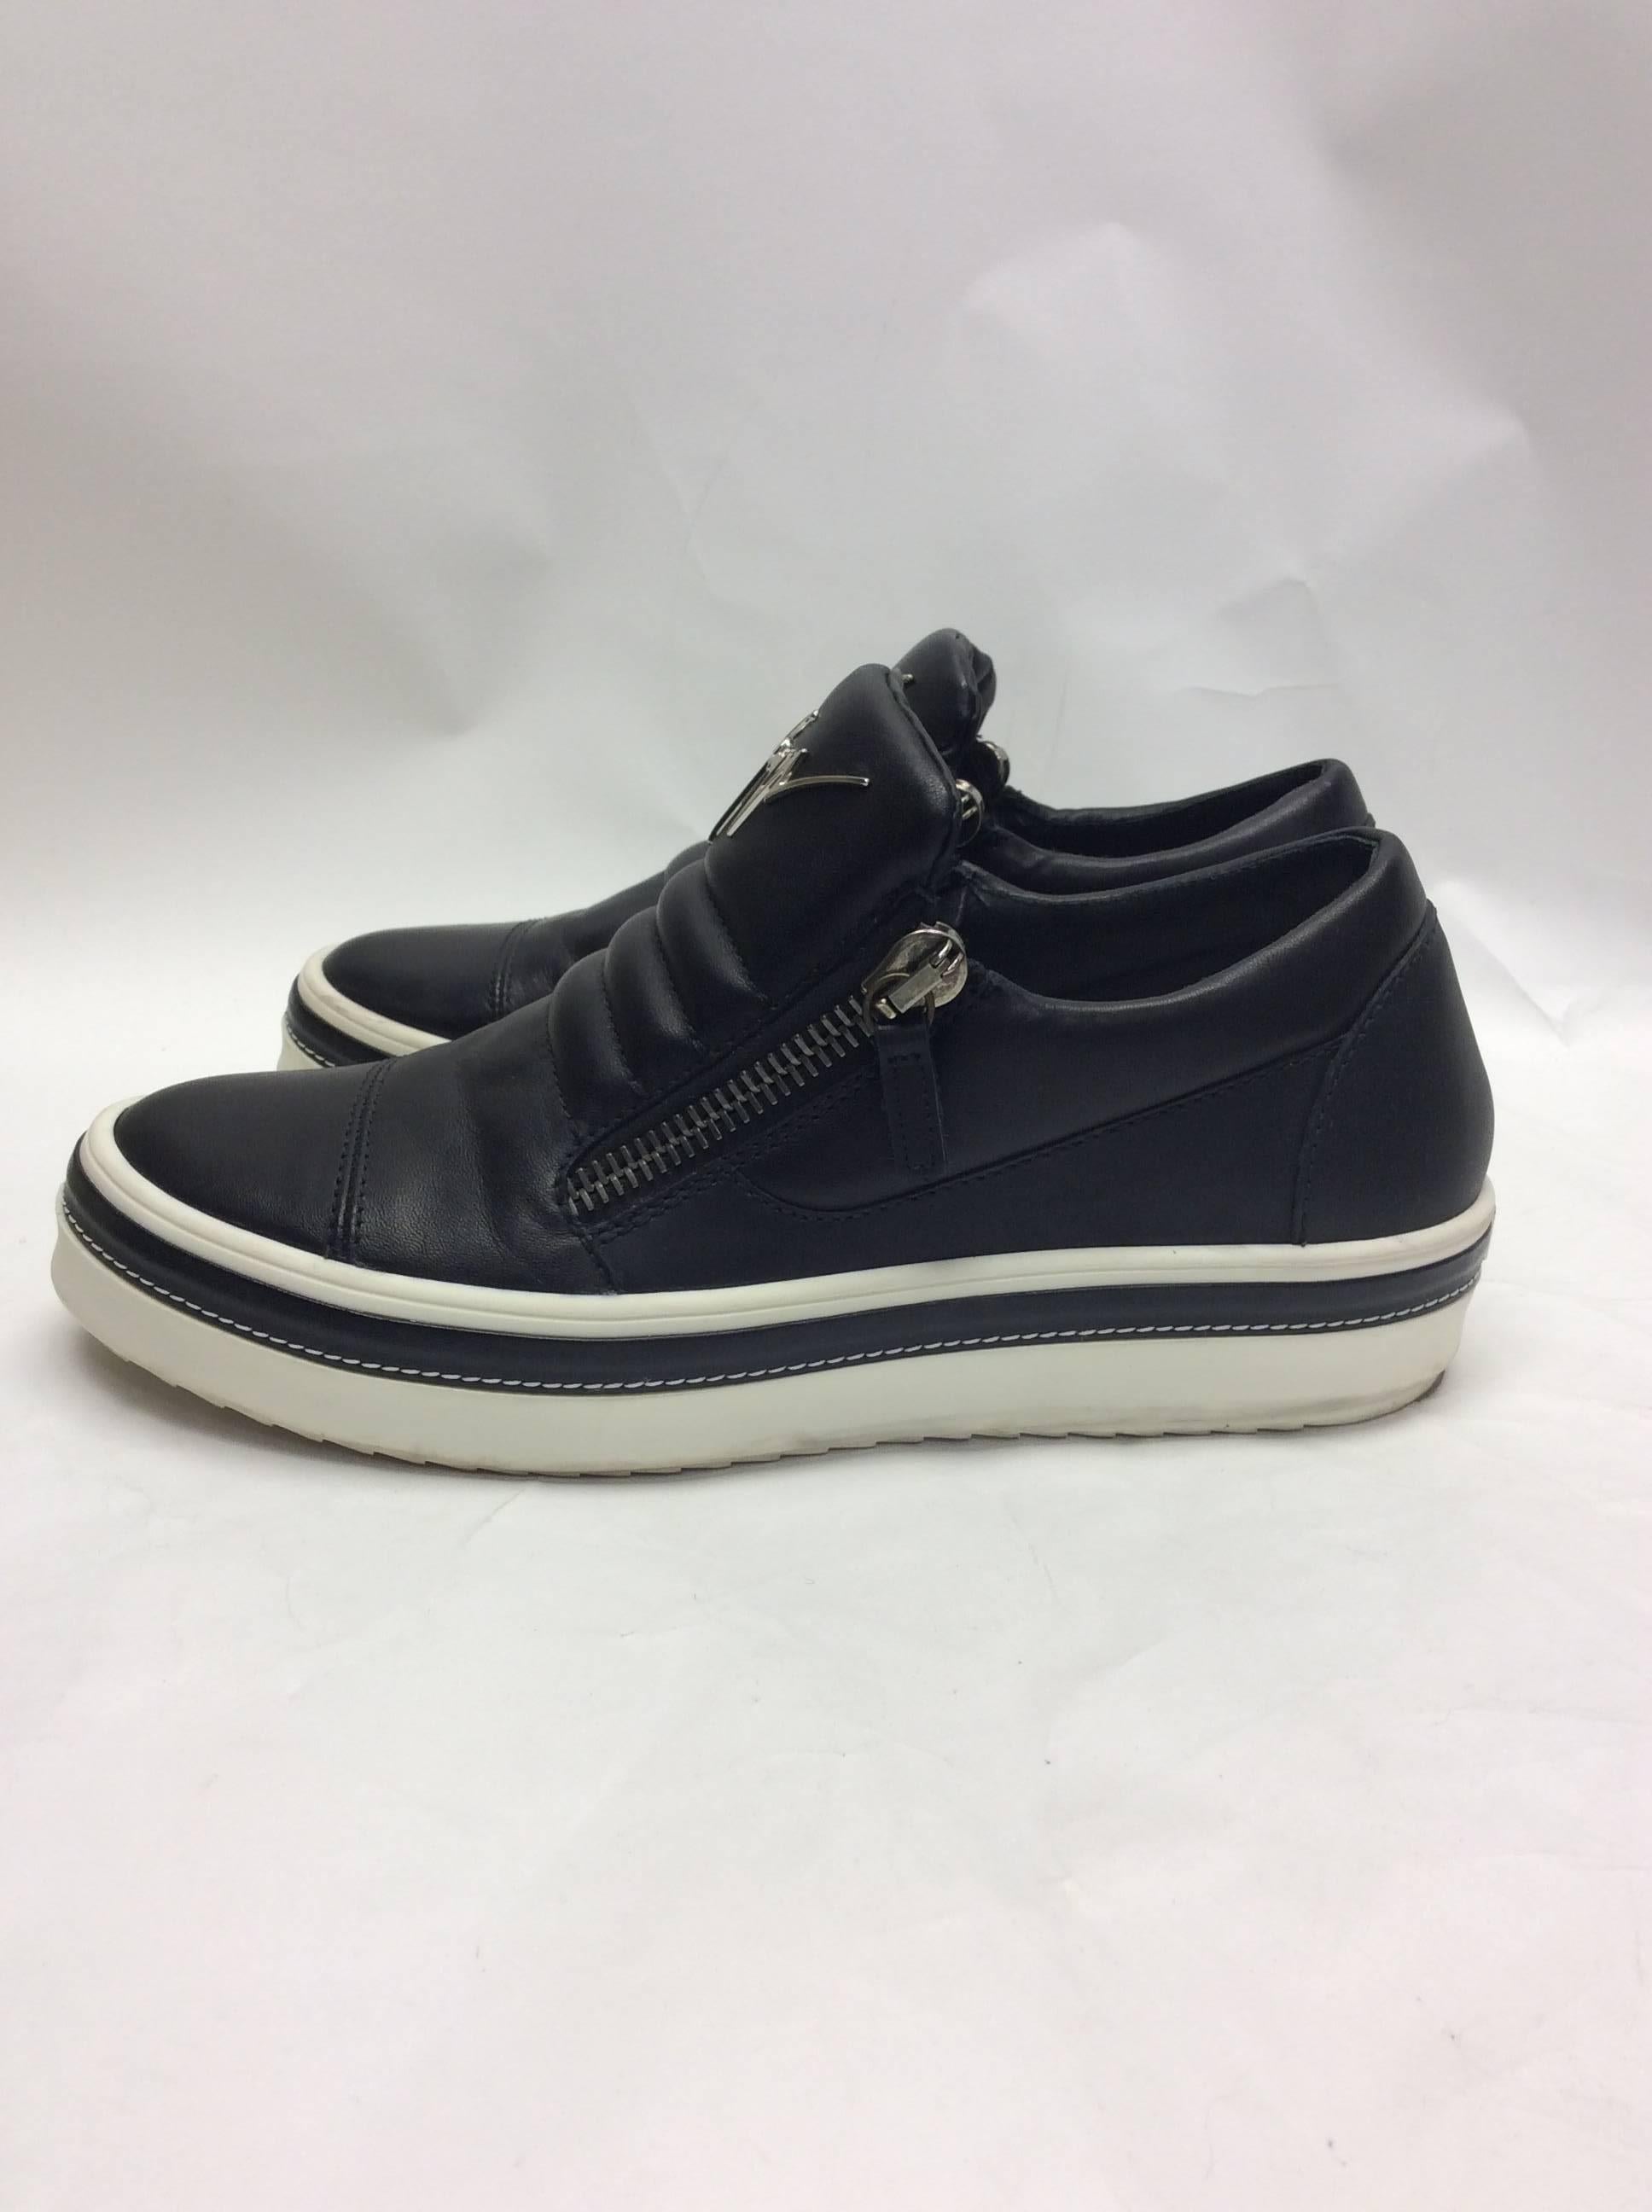 Giuseppe Zanotti Black Leather Slip On Sneaker For Sale 1